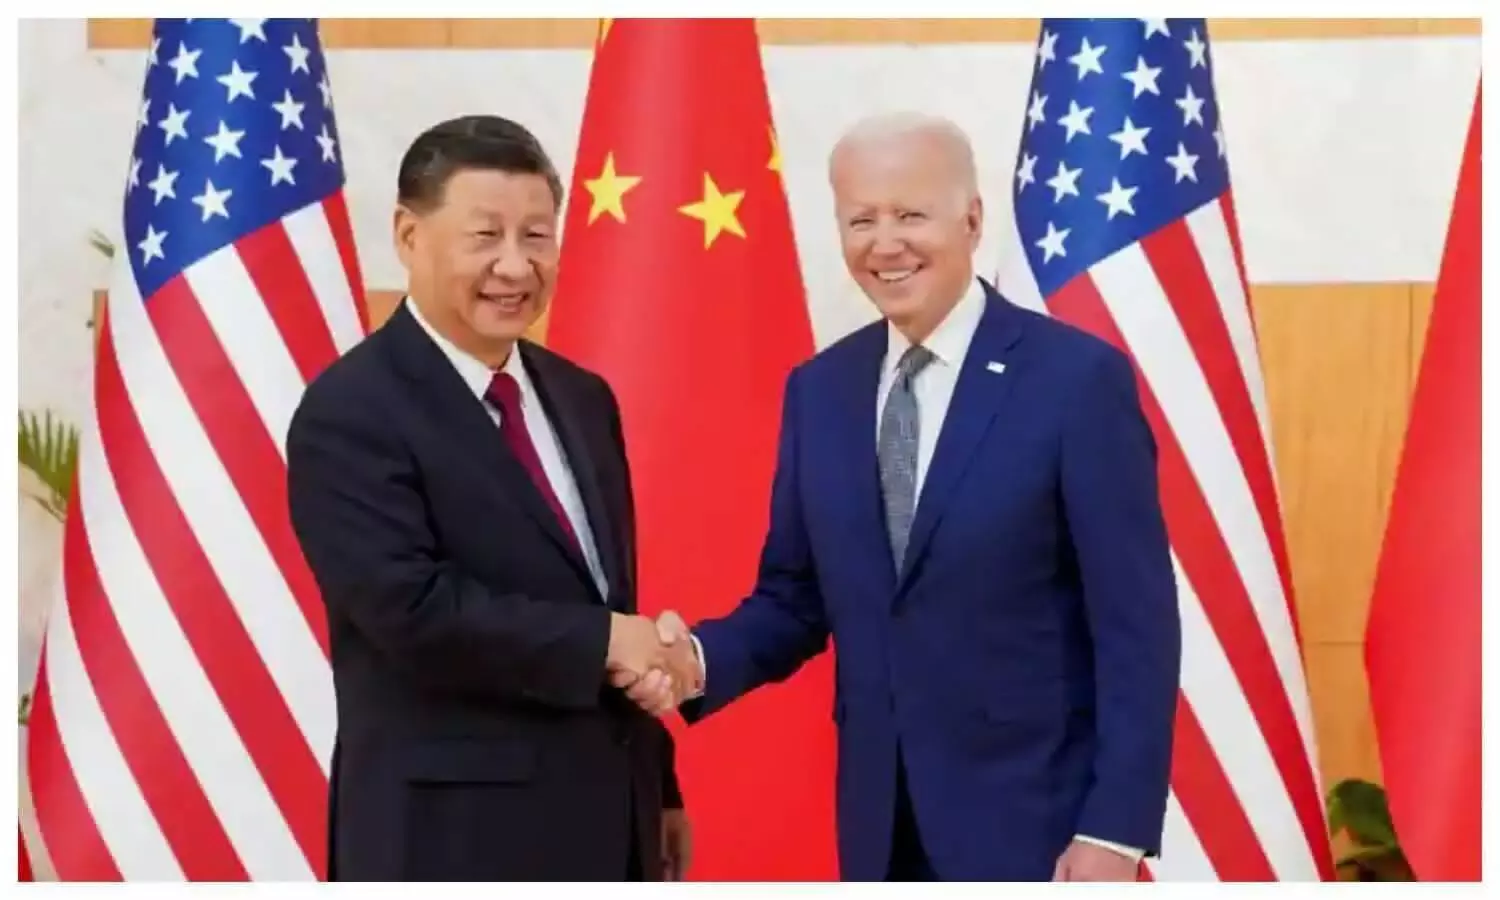 Biden Jinping meet at G20 Summit